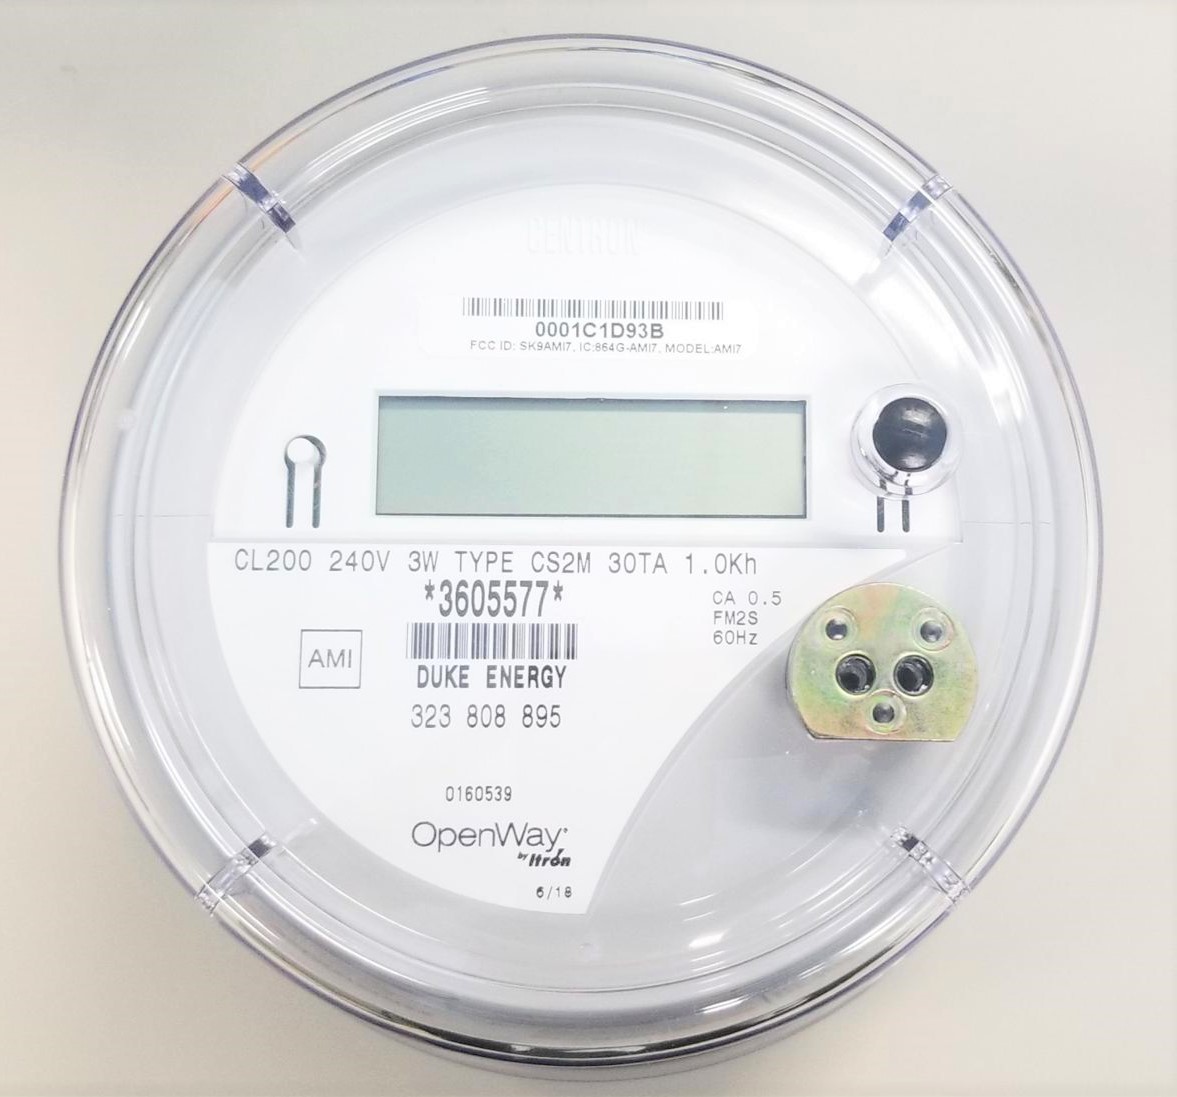 Duke Energy Smart Meter Codes